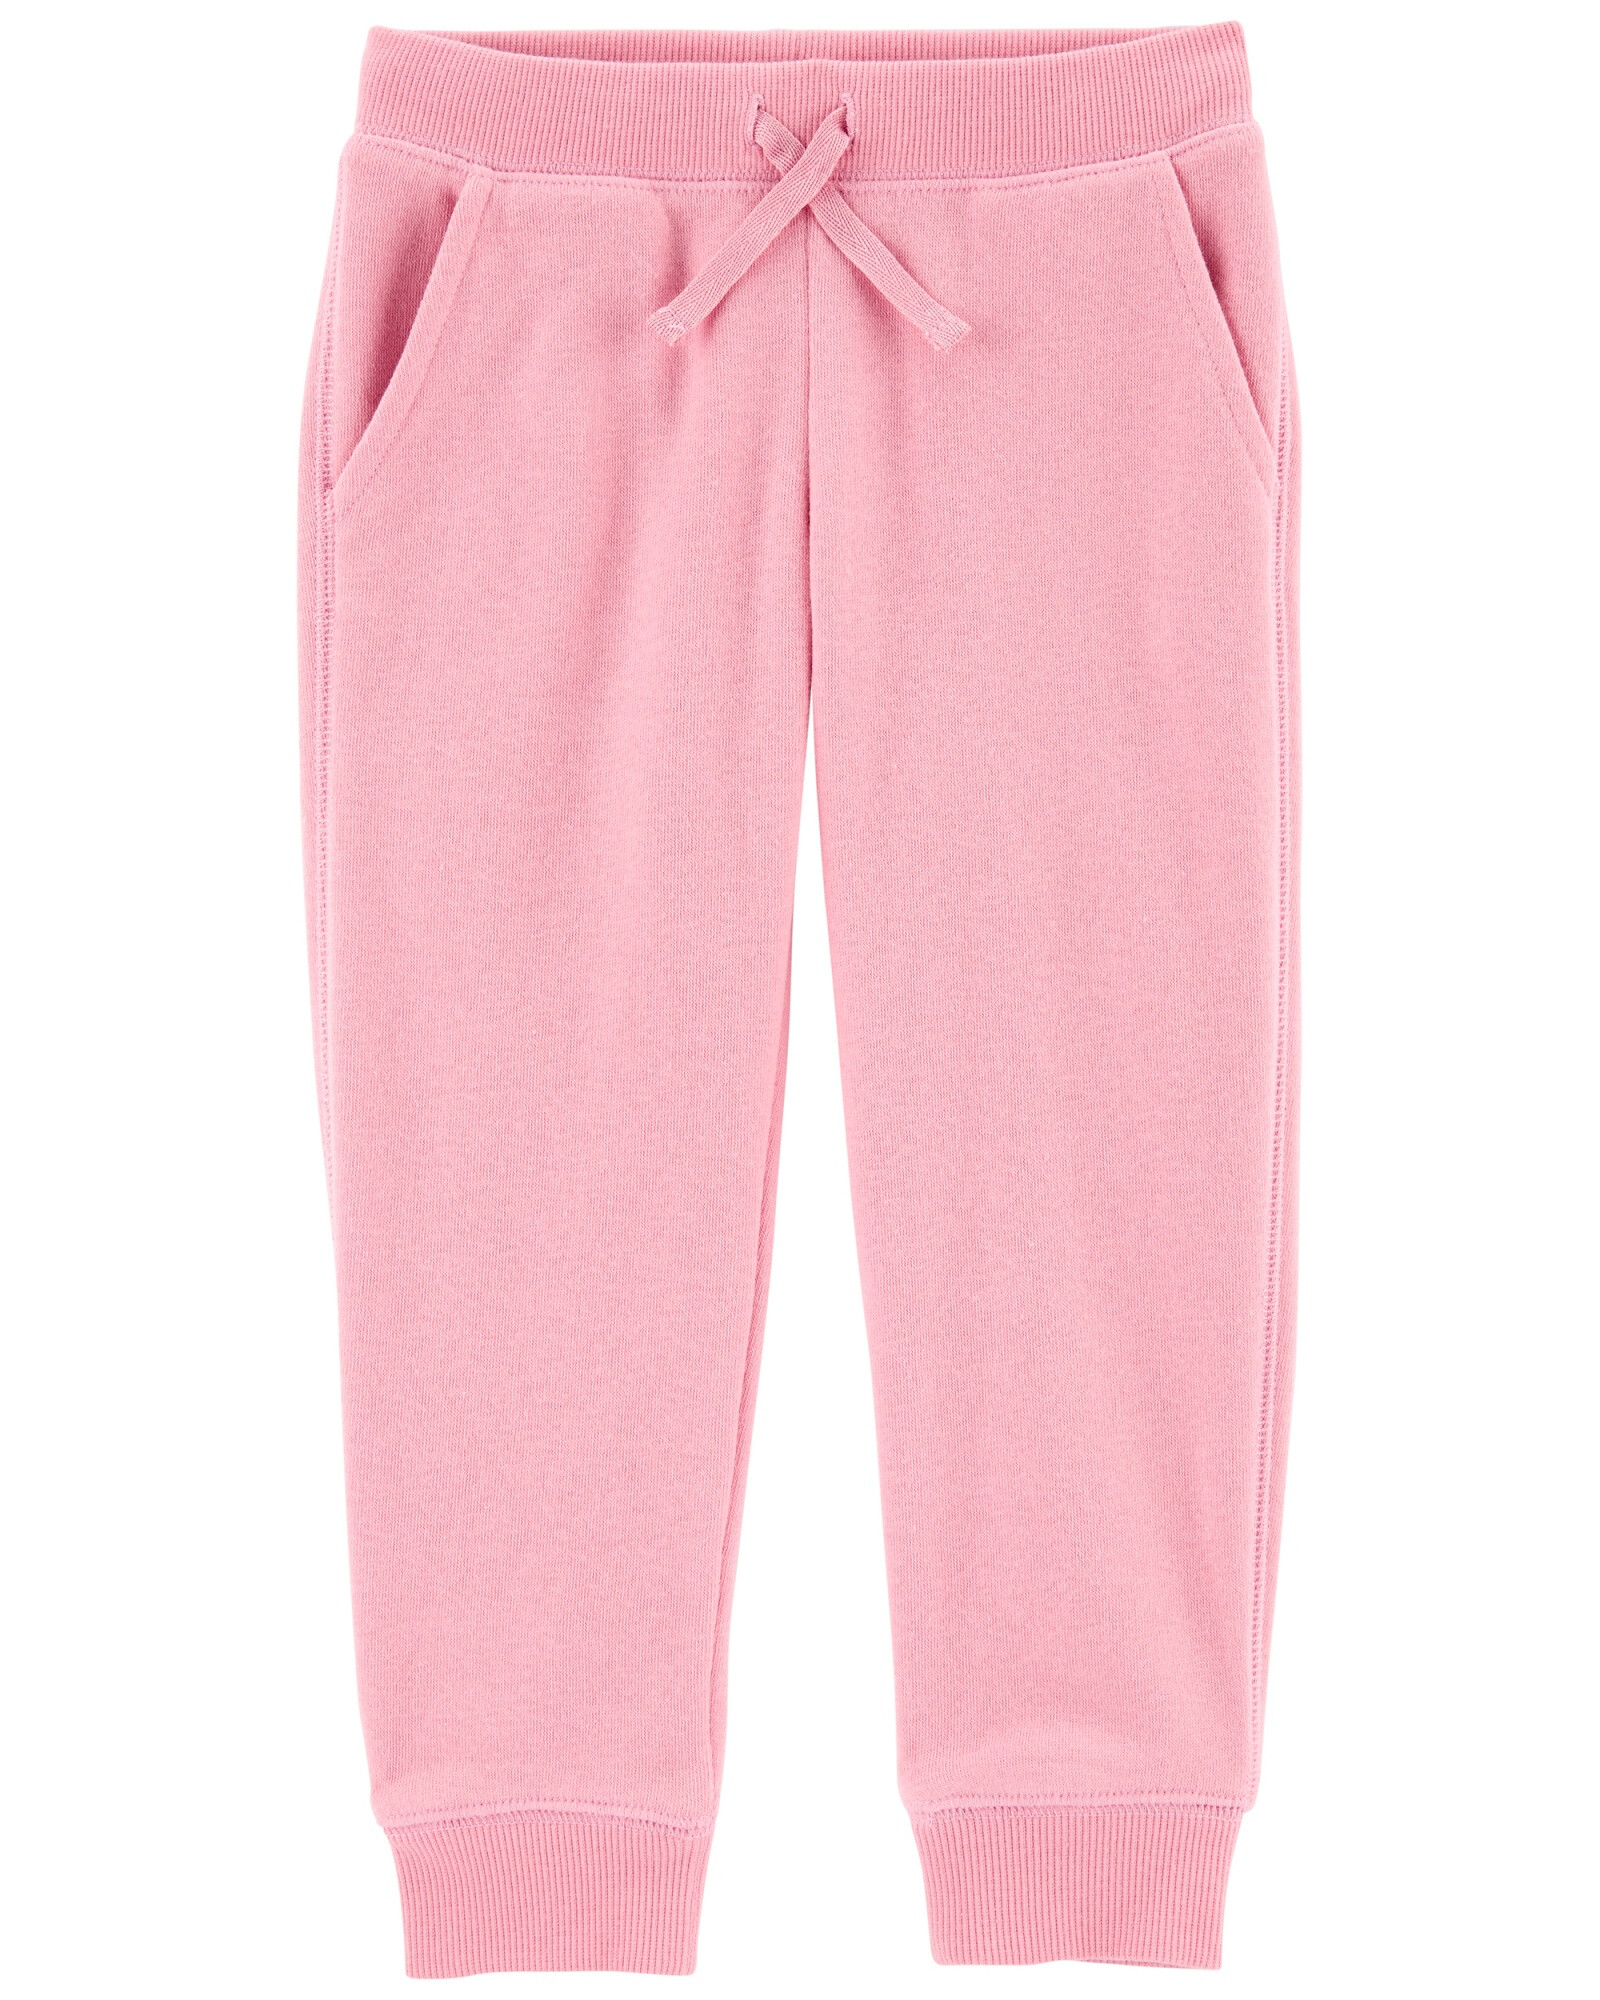 Pantalón deportivo de algodón, rosado. Talles 2-5T Sin color